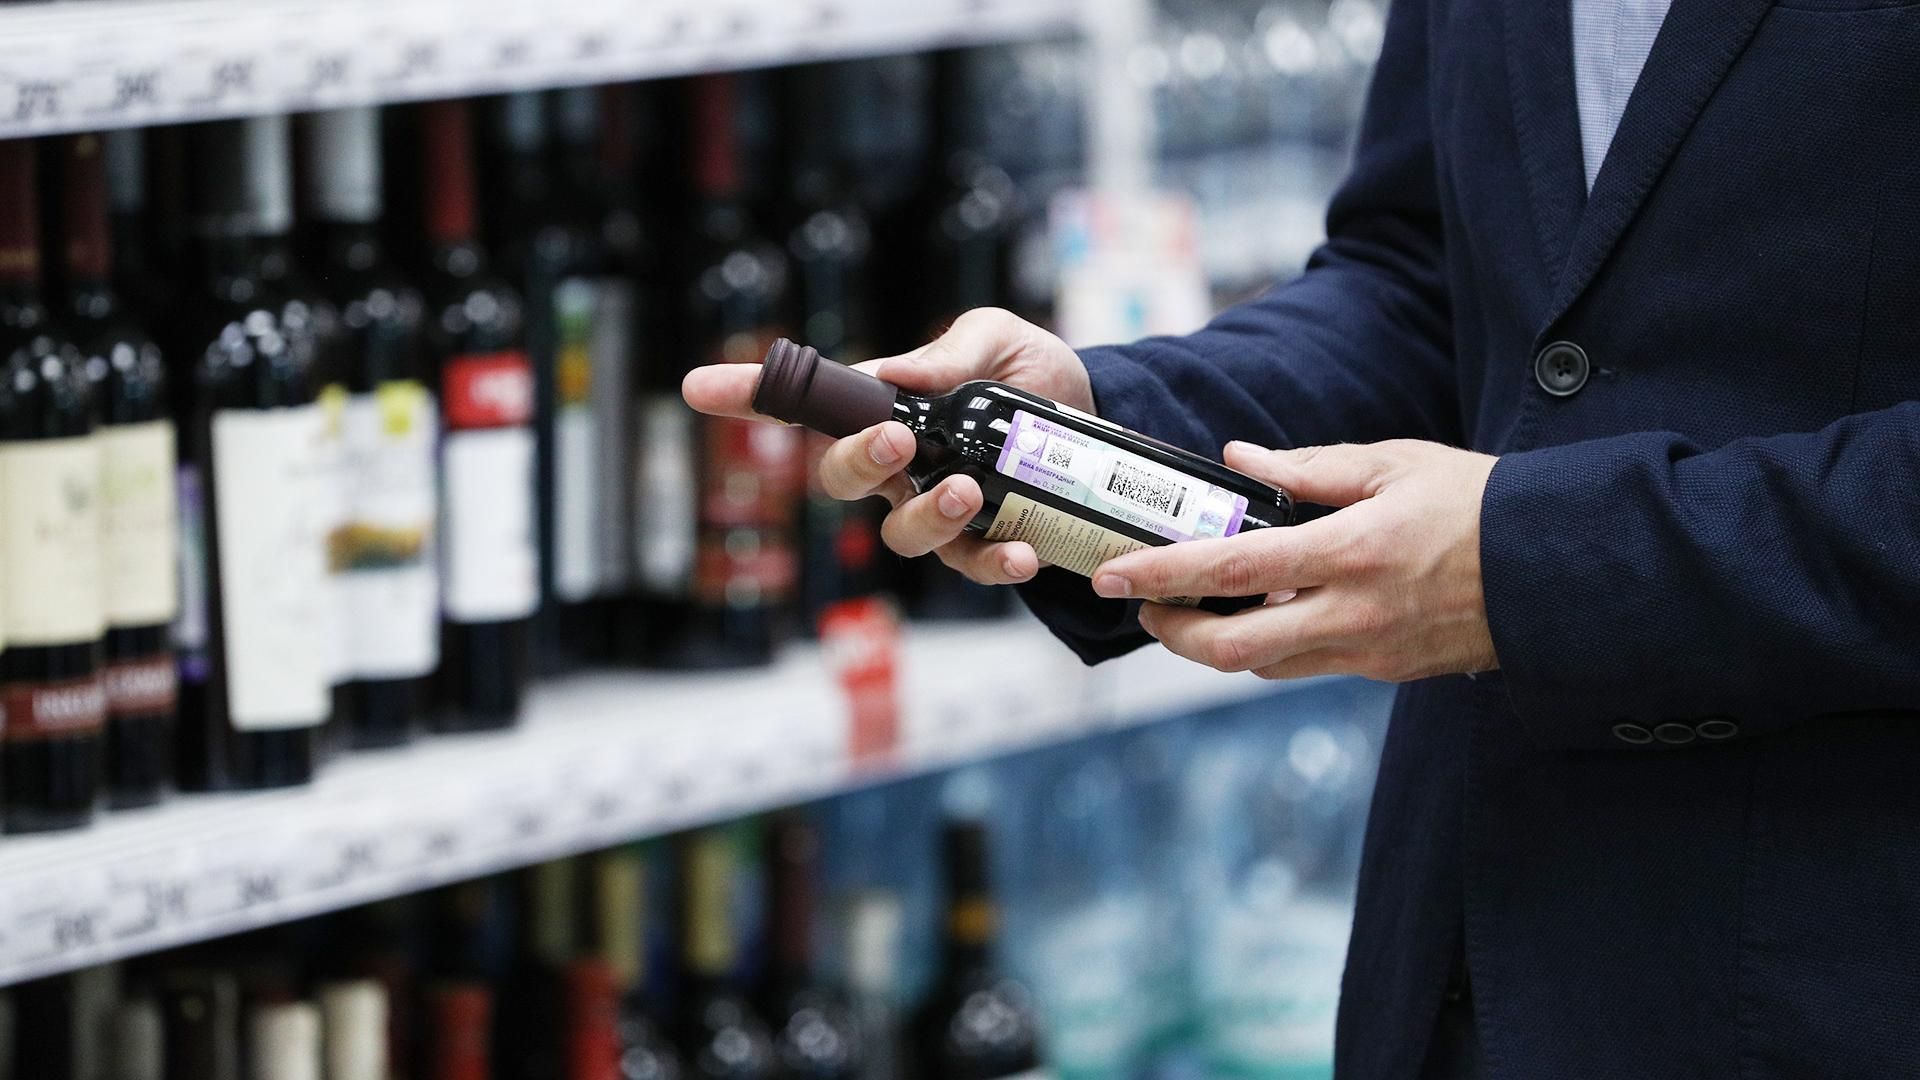 Цены на алкоголь в Украине могут вырасти: на сколько возрастет стоимость - Экономические новости Украины - Экономика